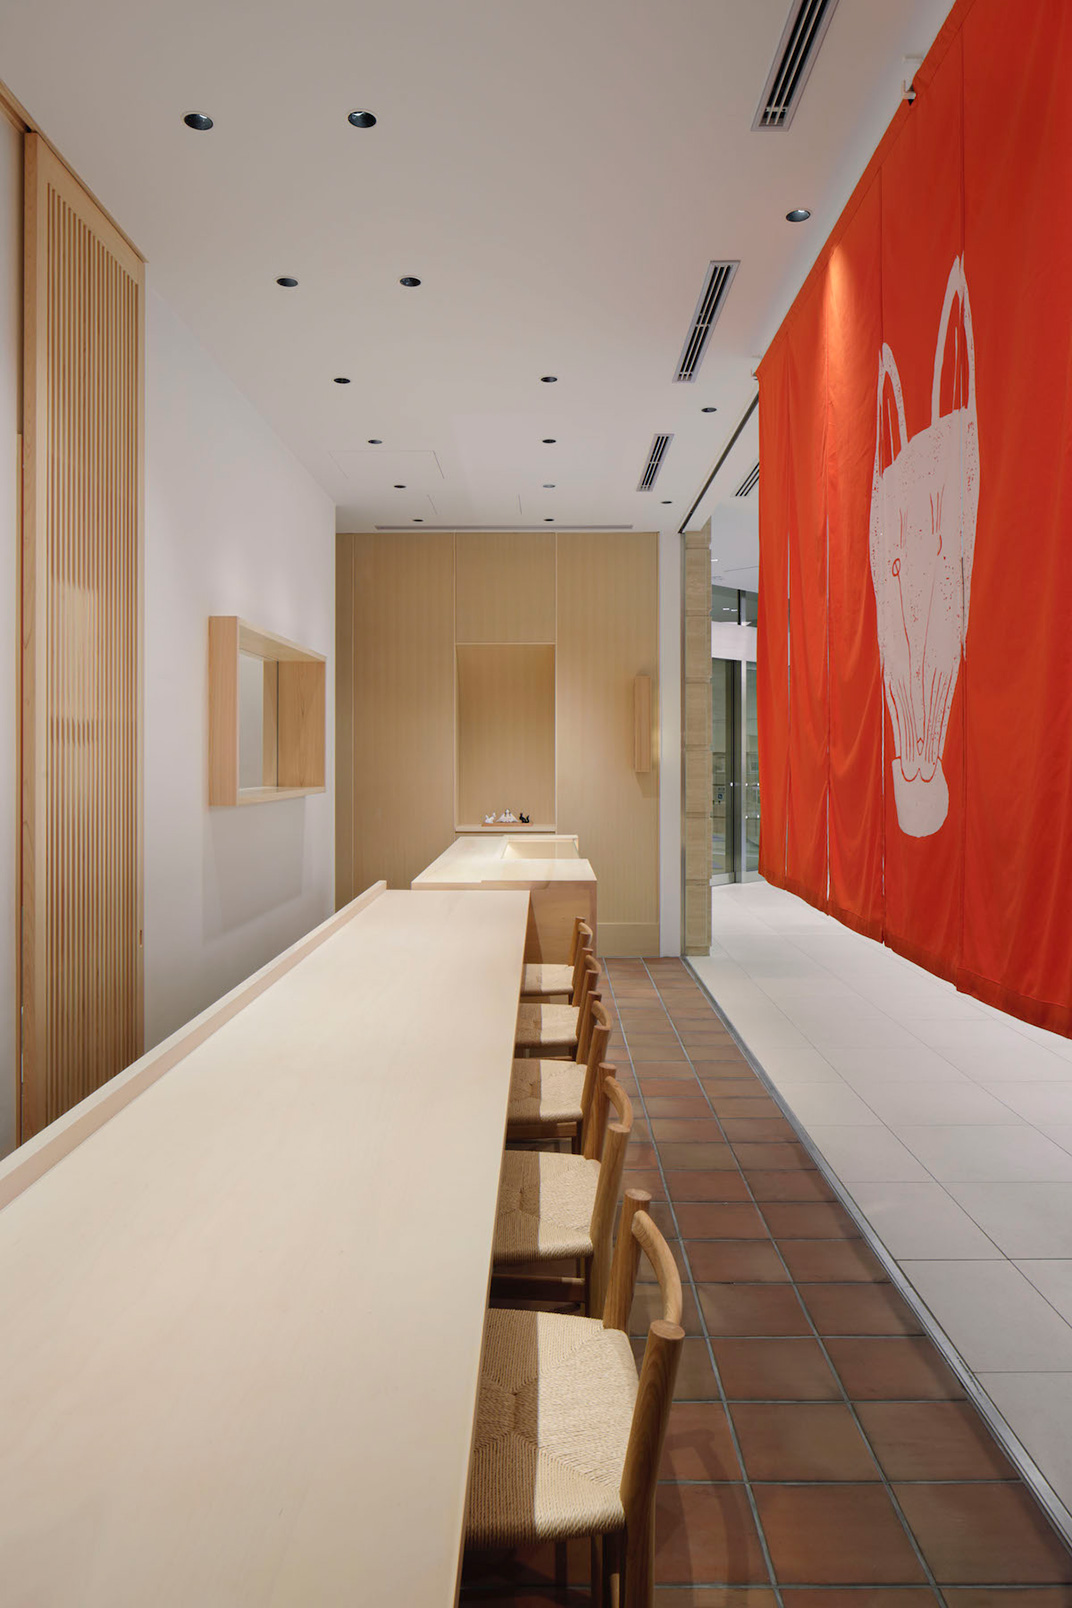 日本料理餐厅空间设计 IDIN Architects 视觉餐饮 全球餐饮研究所 vi设计 空间设计 深圳 武汉 杭州 广州 上海 北京